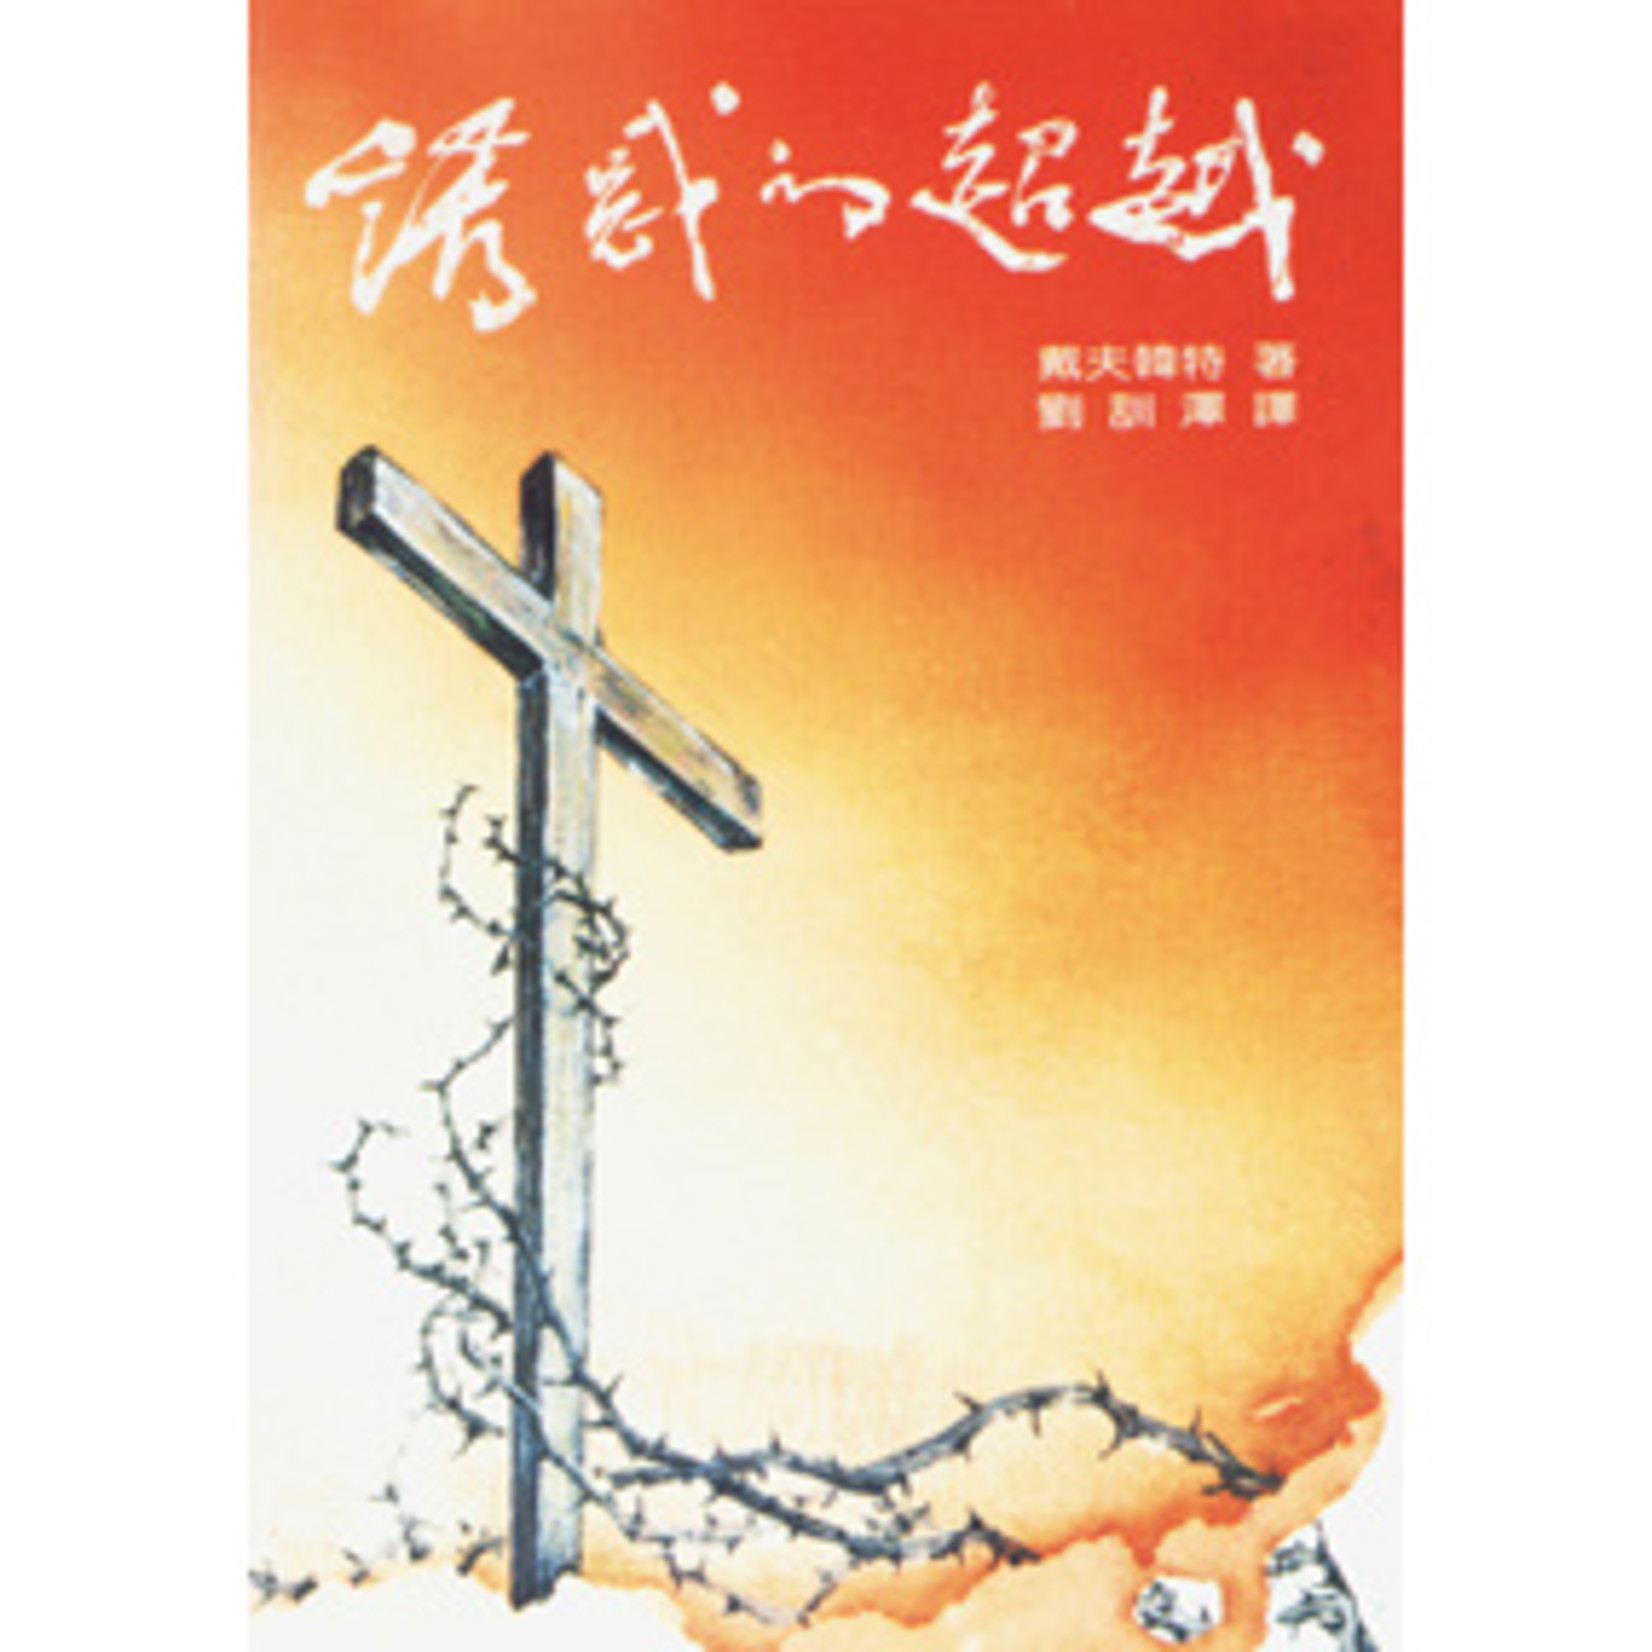 台灣中華福音神學院 China Evangelical Seminary 誘惑的超越 | Beyond Seduction